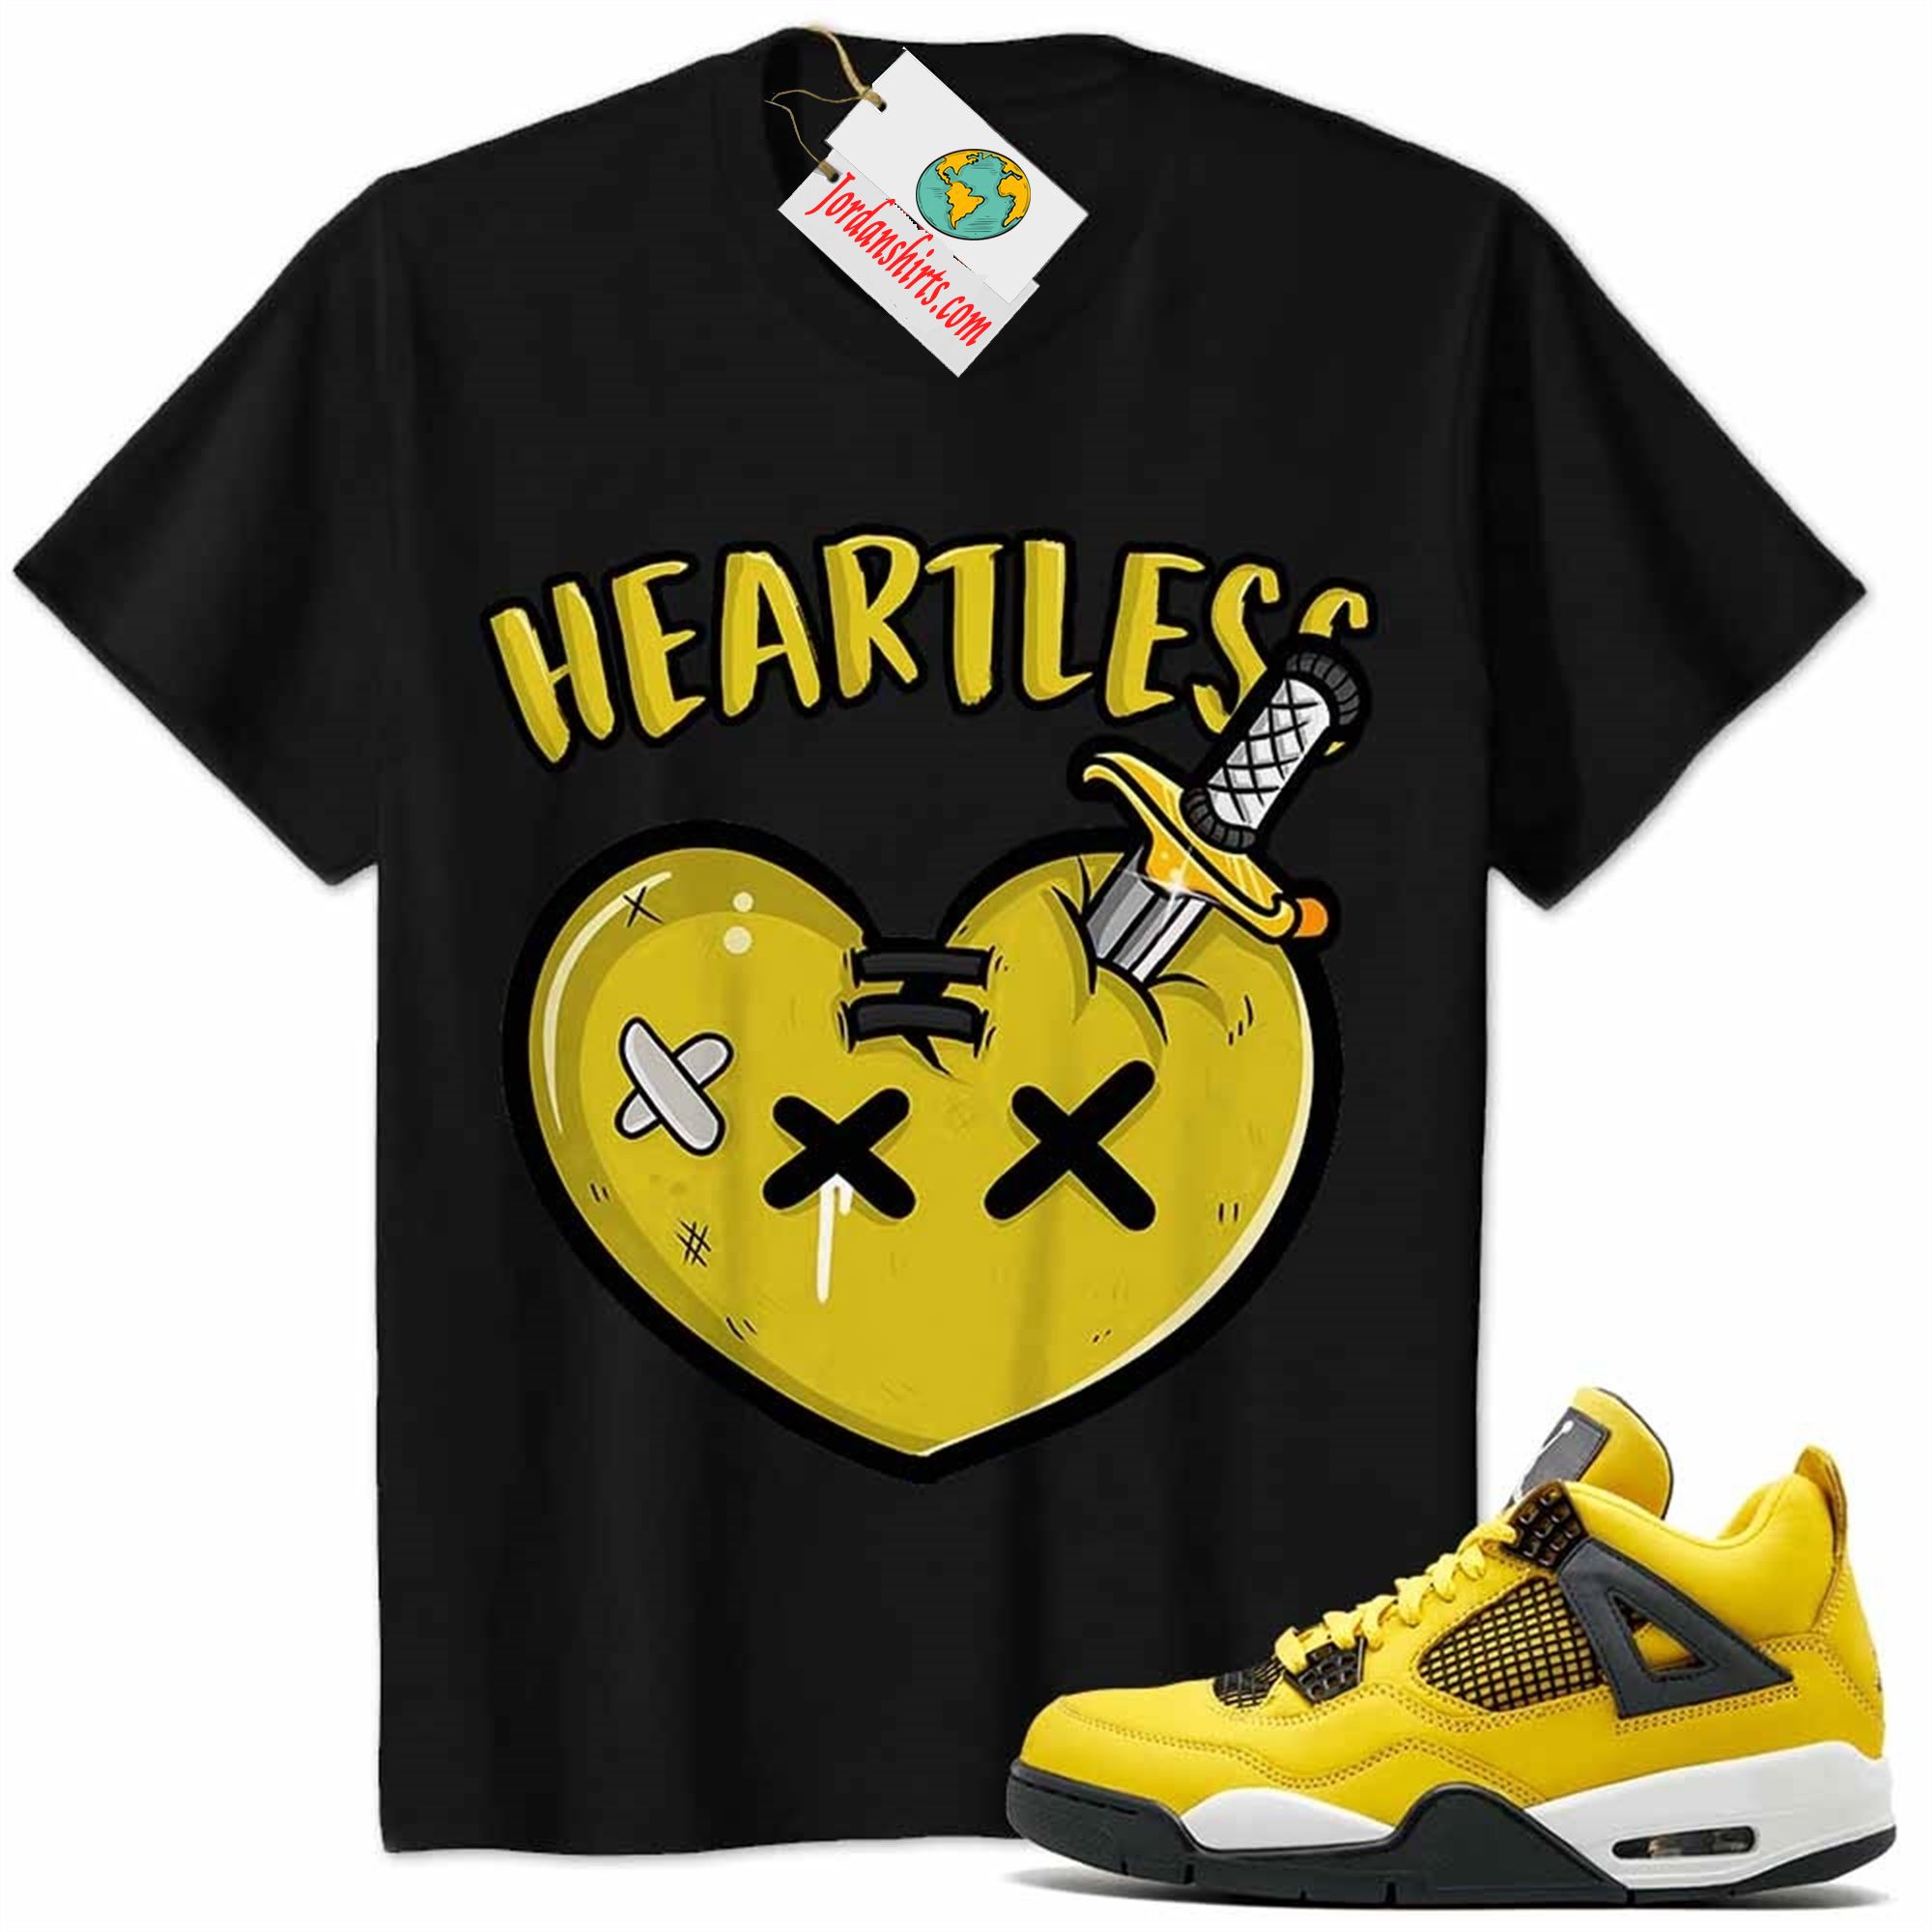 Jordan 4 Shirt, Crying Heart Heartless Black Air Jordan 4 Tour Yellow Lightning 4s Plus Size Up To 5xl